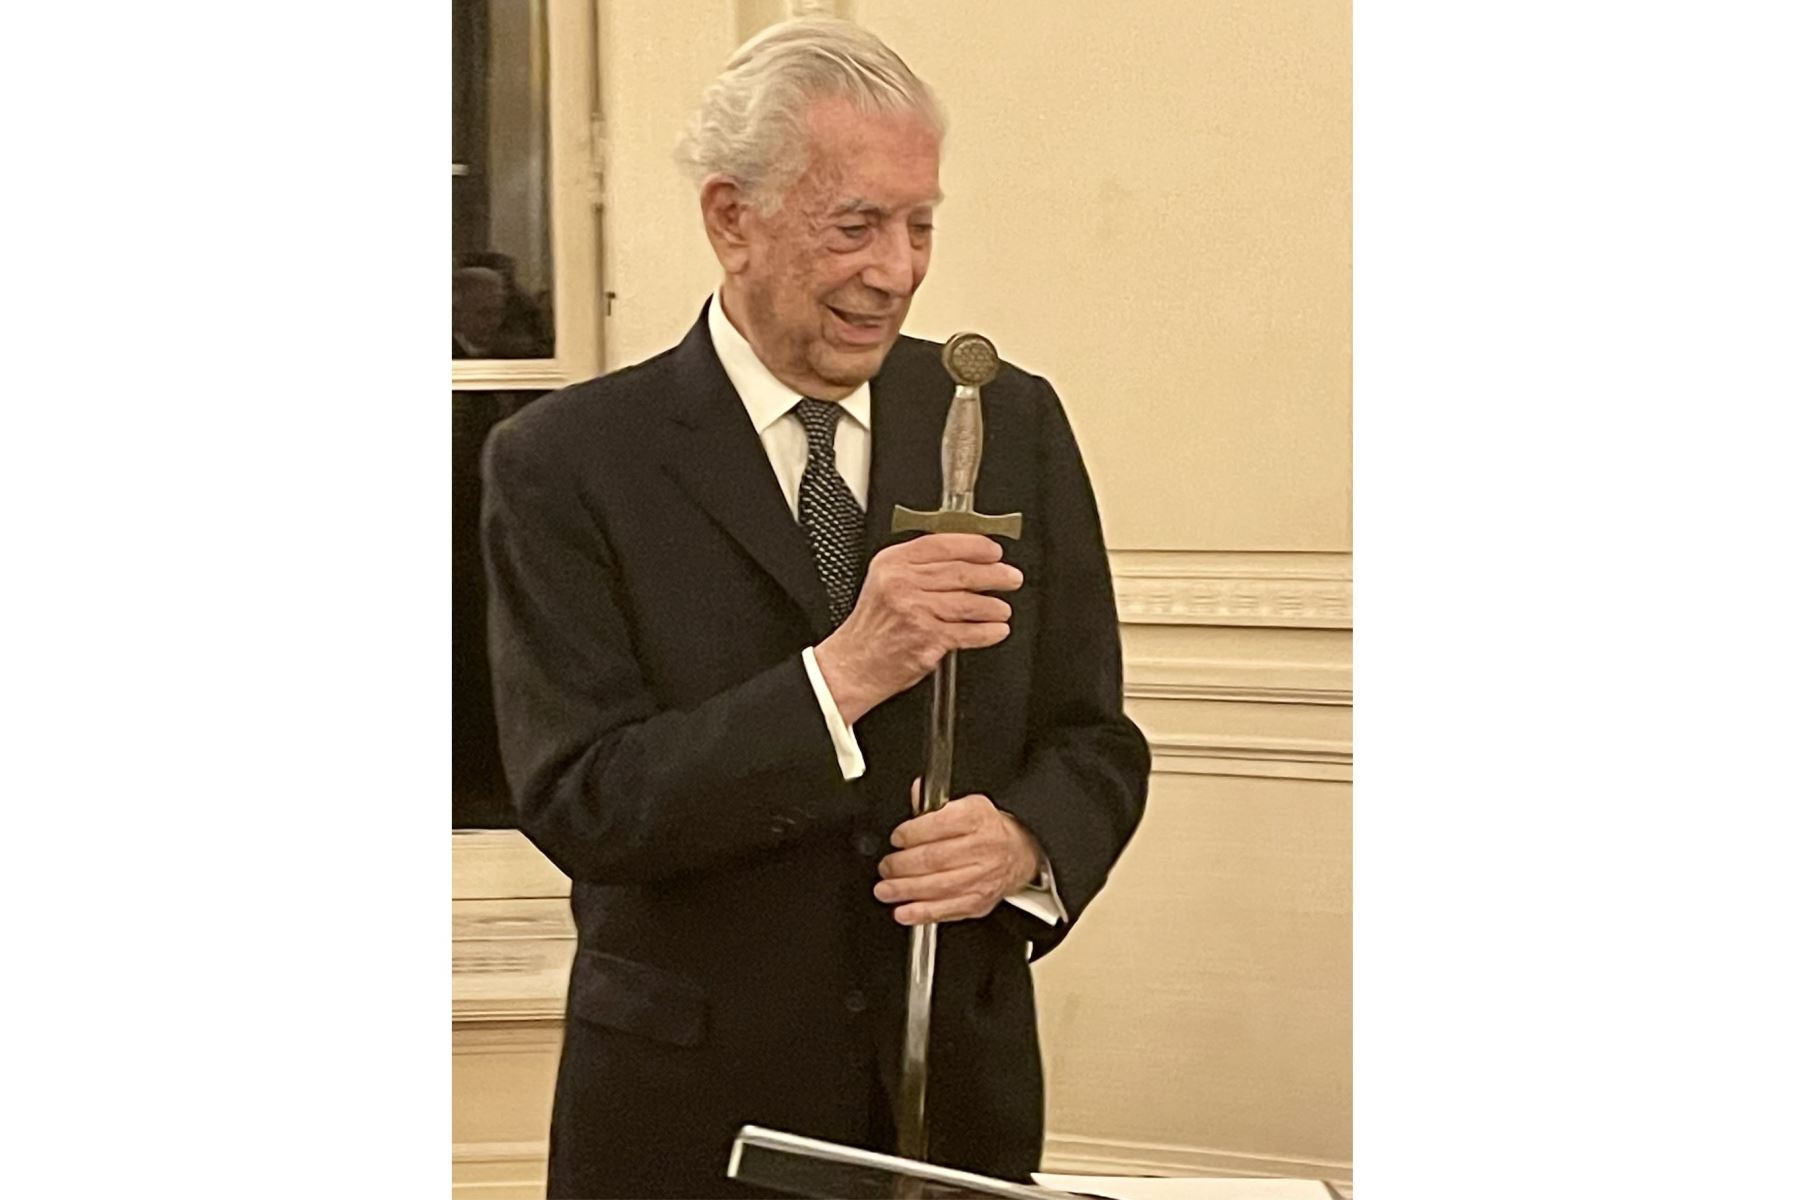 La entrega de la espada. Un rito desde los tiempos de Richelieu como parte de la incorporación a la Academia Francesa. Foto: Morgana Vargas Llosa